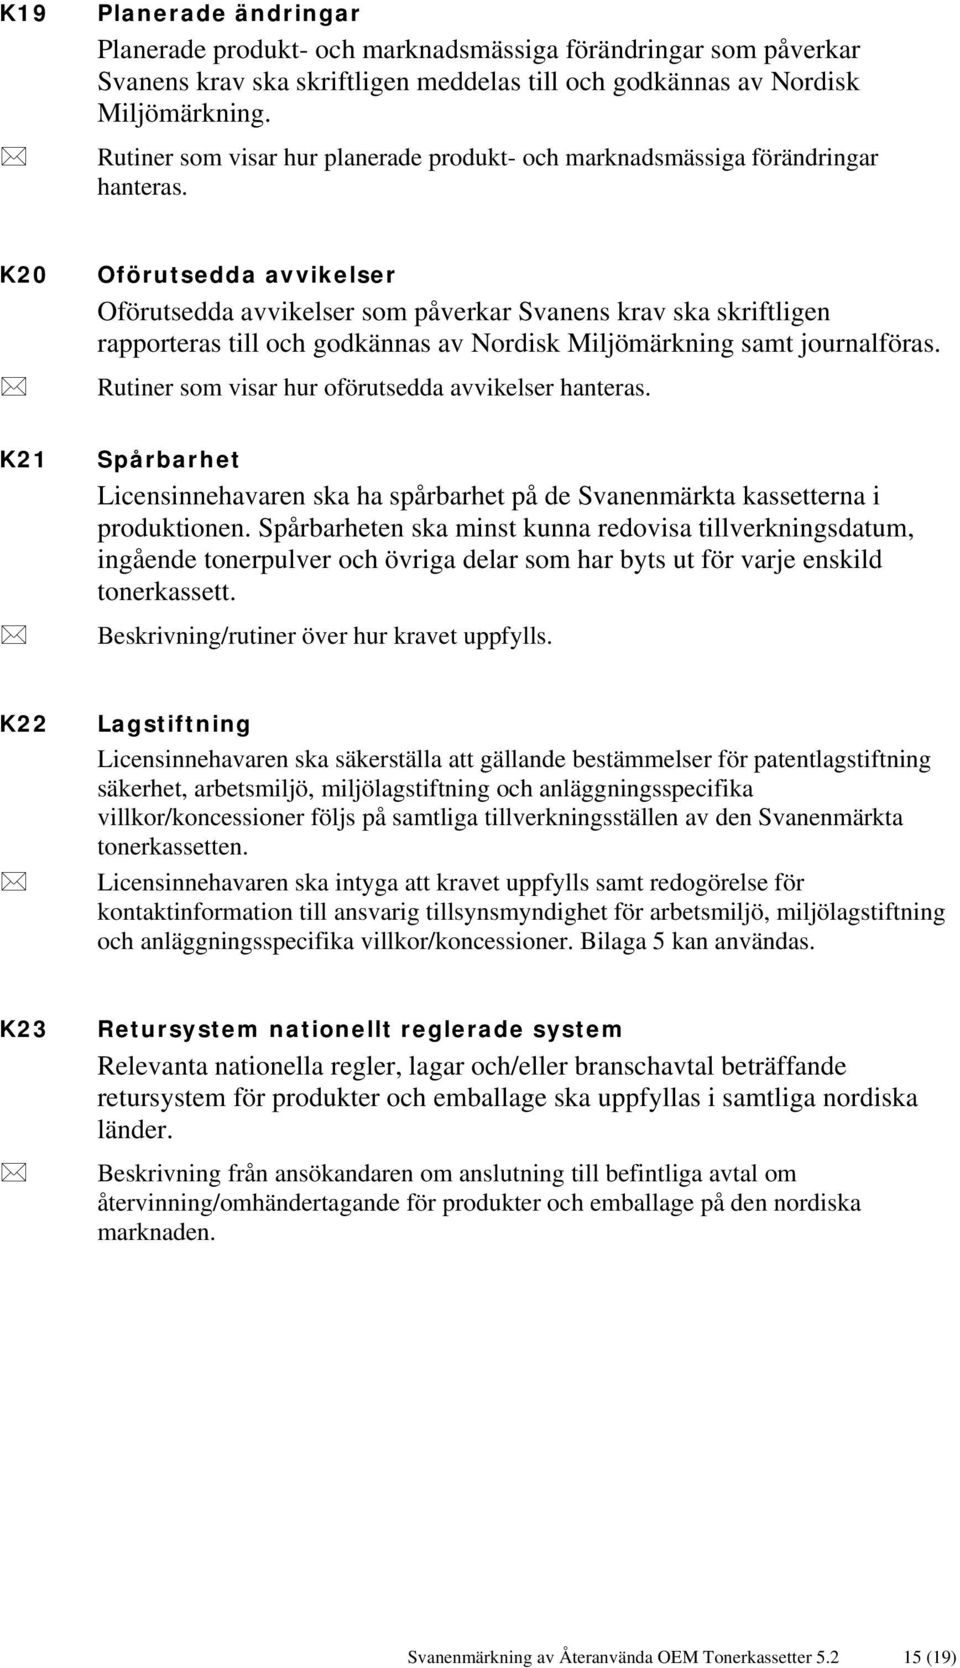 K20 Oförutsedda avvikelser Oförutsedda avvikelser som påverkar Svanens krav ska skriftligen rapporteras till och godkännas av Nordisk Miljömärkning samt journalföras.